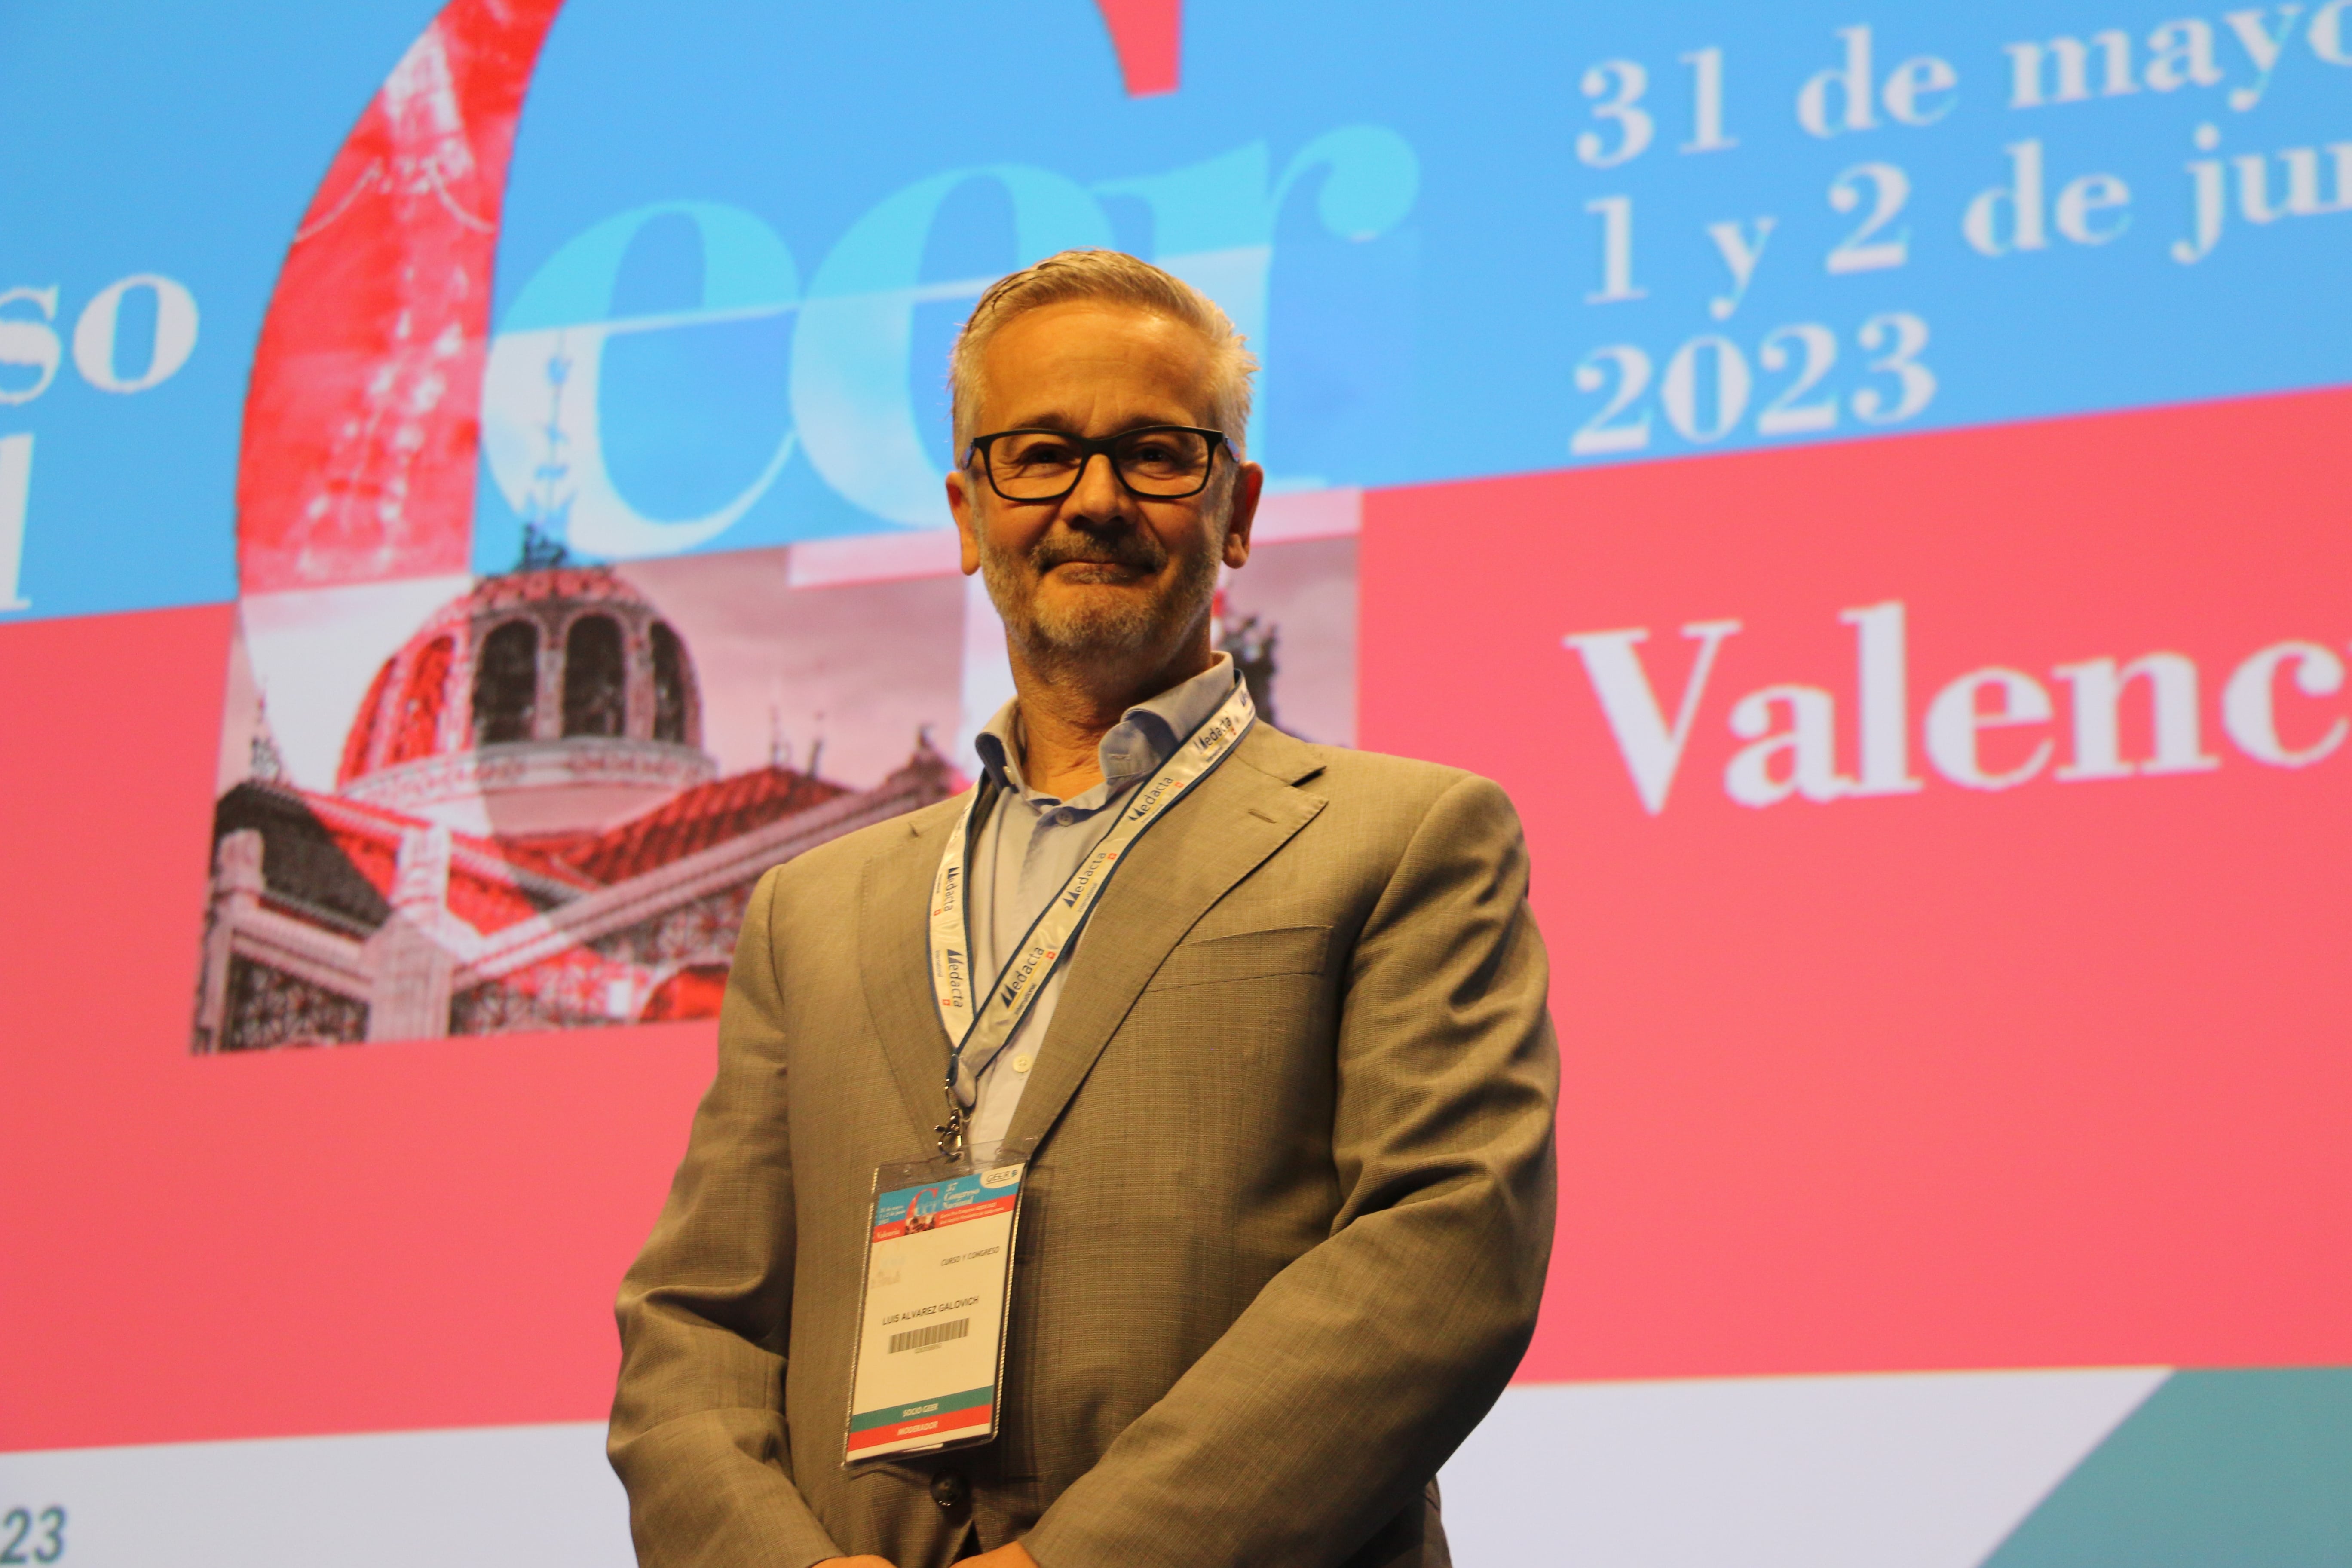 El Dr. Álvarez Galovich asume la presidencia de la Sociedad Española de Columna para los próximos dos años